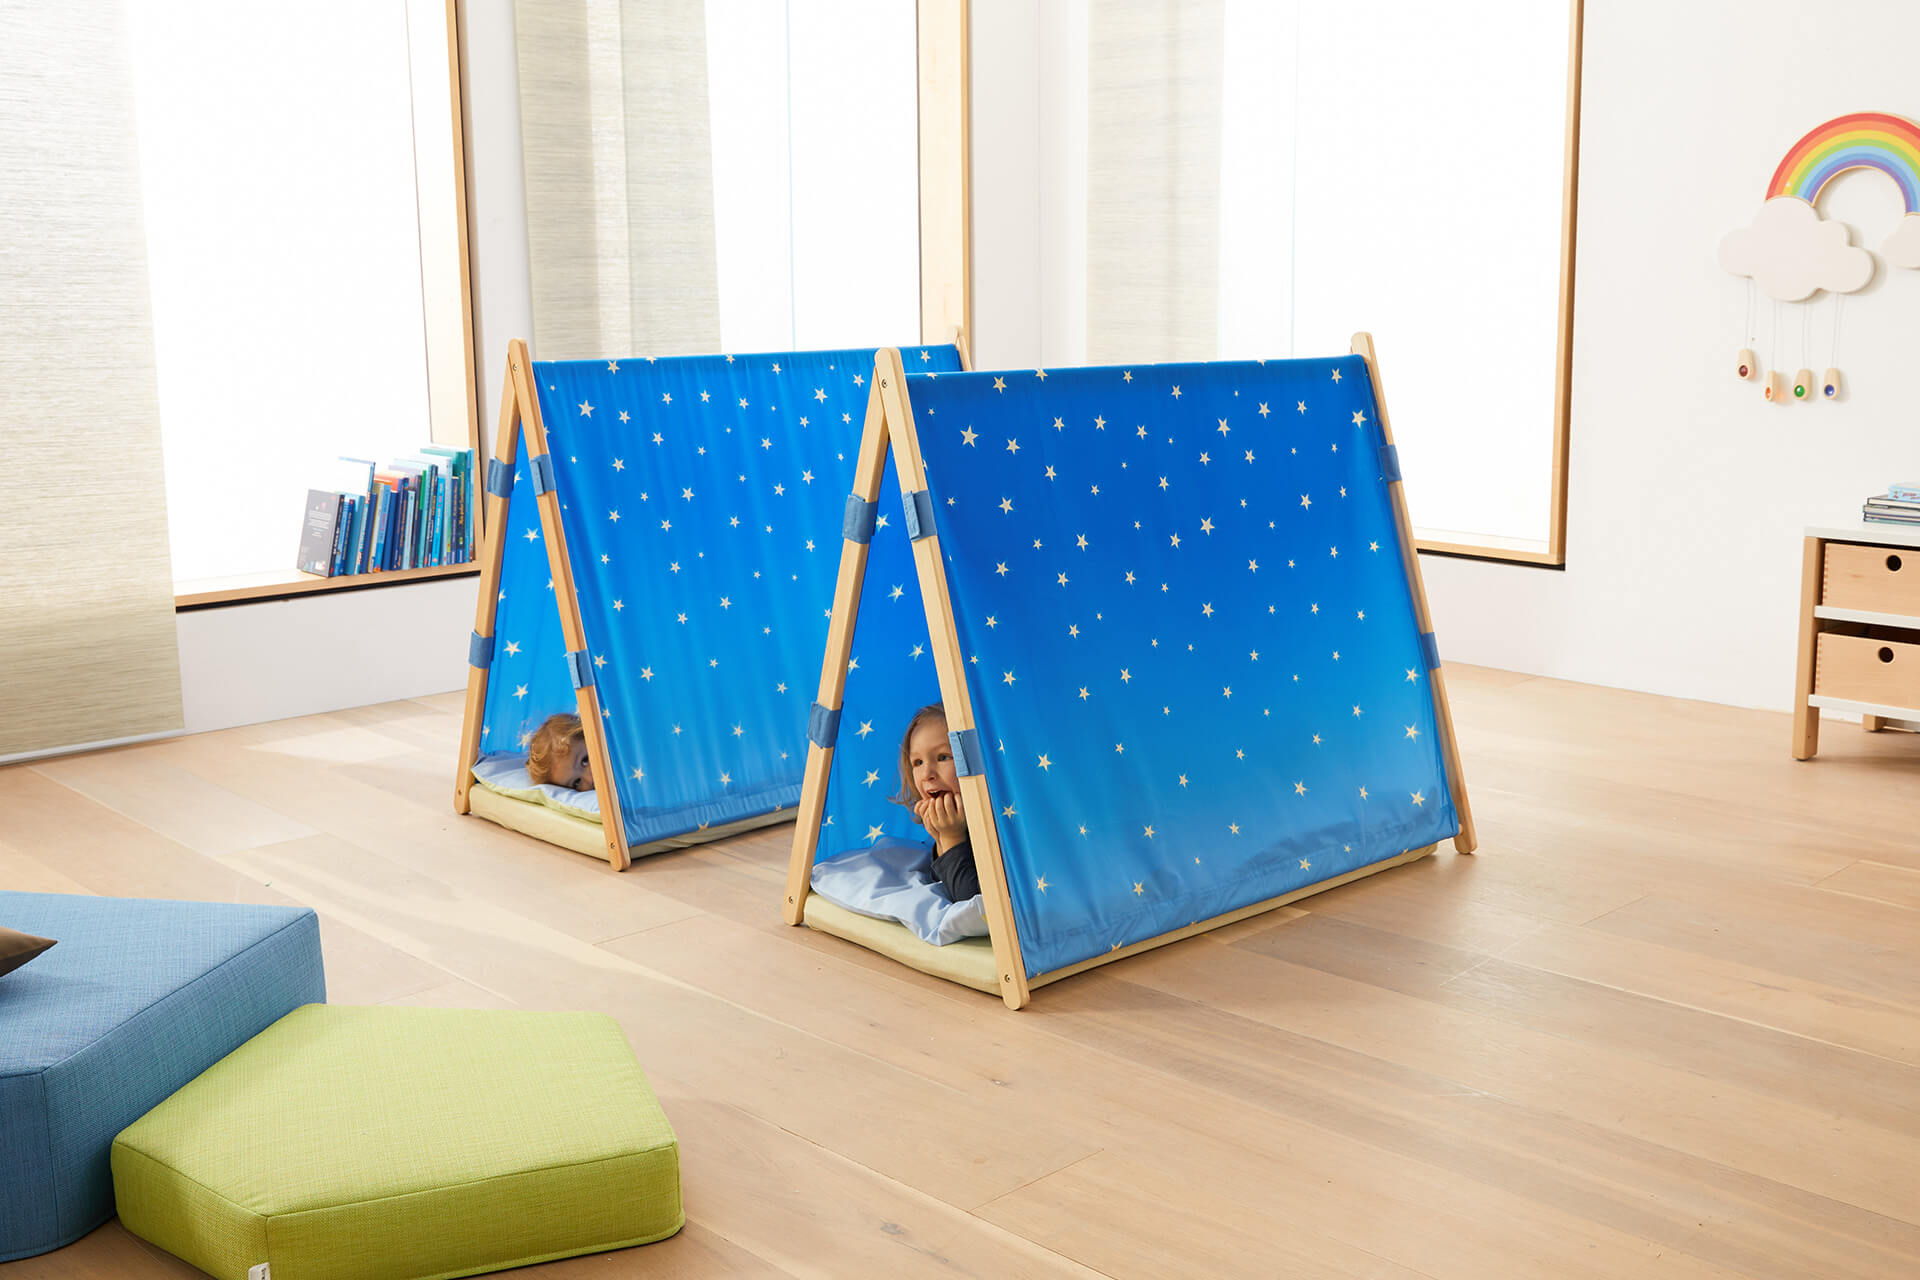 Schlafraum | Kuschel- & Rückzugsecken | Kinder liegen in blauen Zelten, die im Raum auf dem Boden stehen